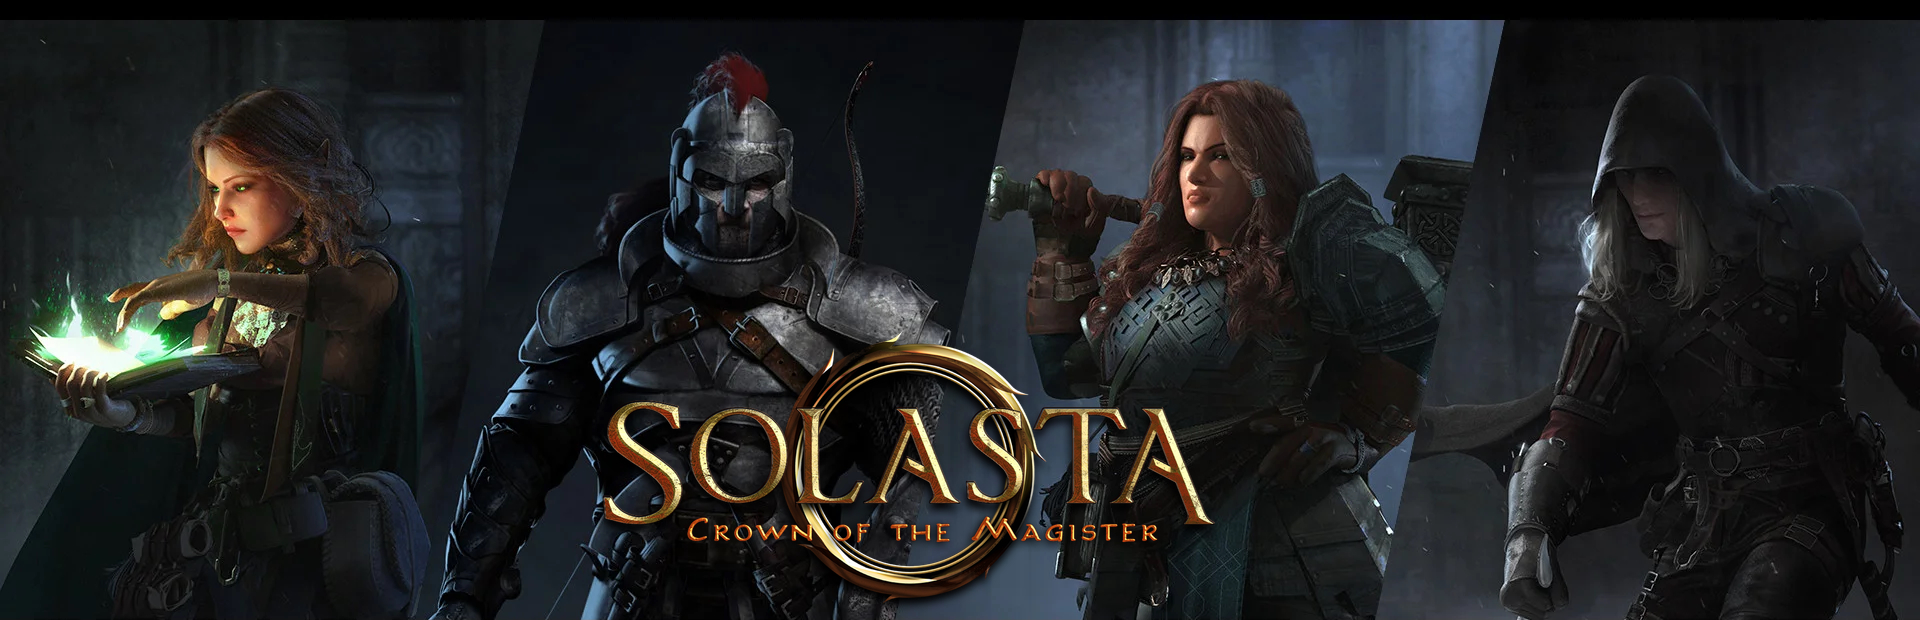 دانلود بازی Solasta: Crown of the Magister برای پی سی | گیمباتو